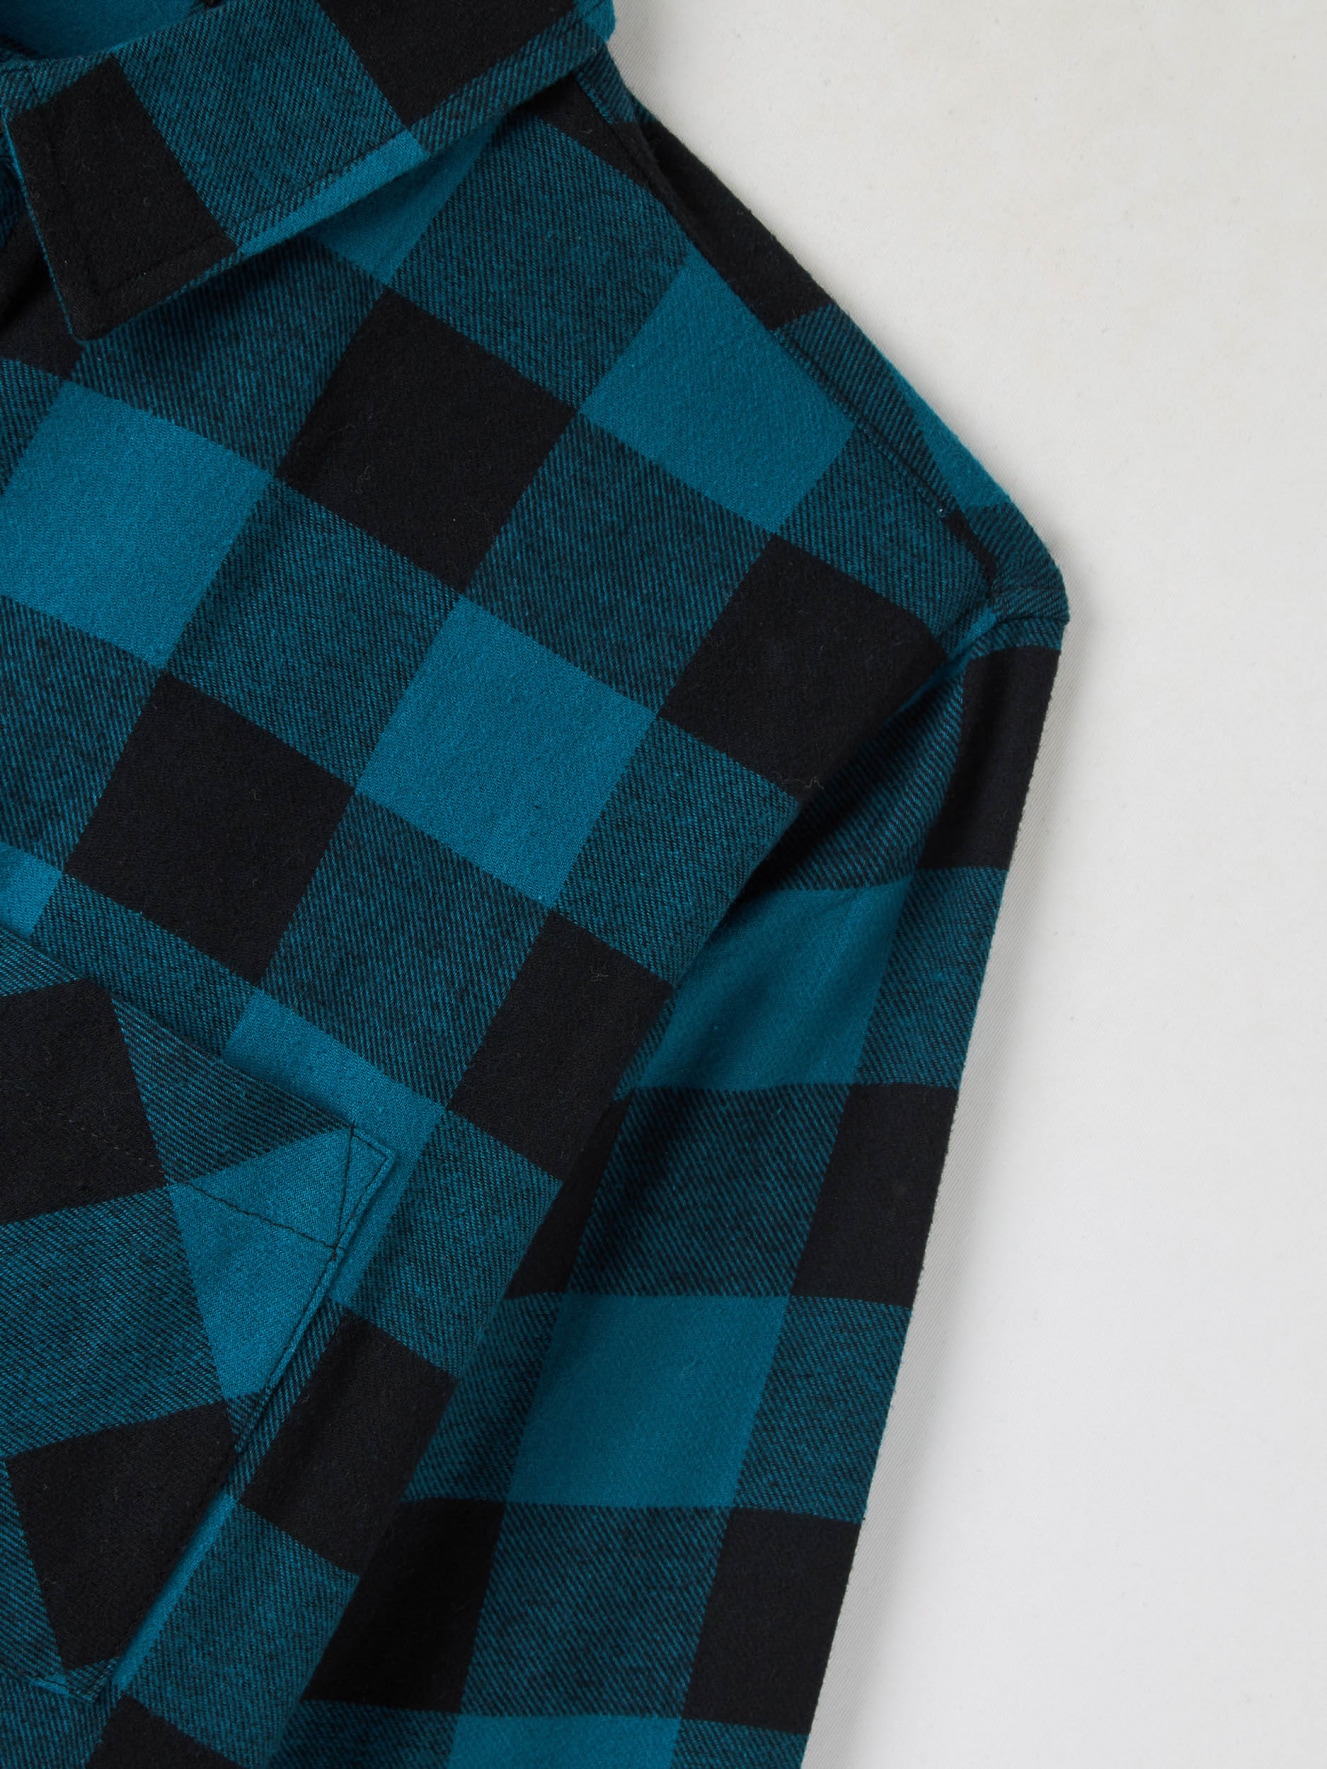 Veste-chemise Coupe Classique - Turquoise/carreaux - HOMME